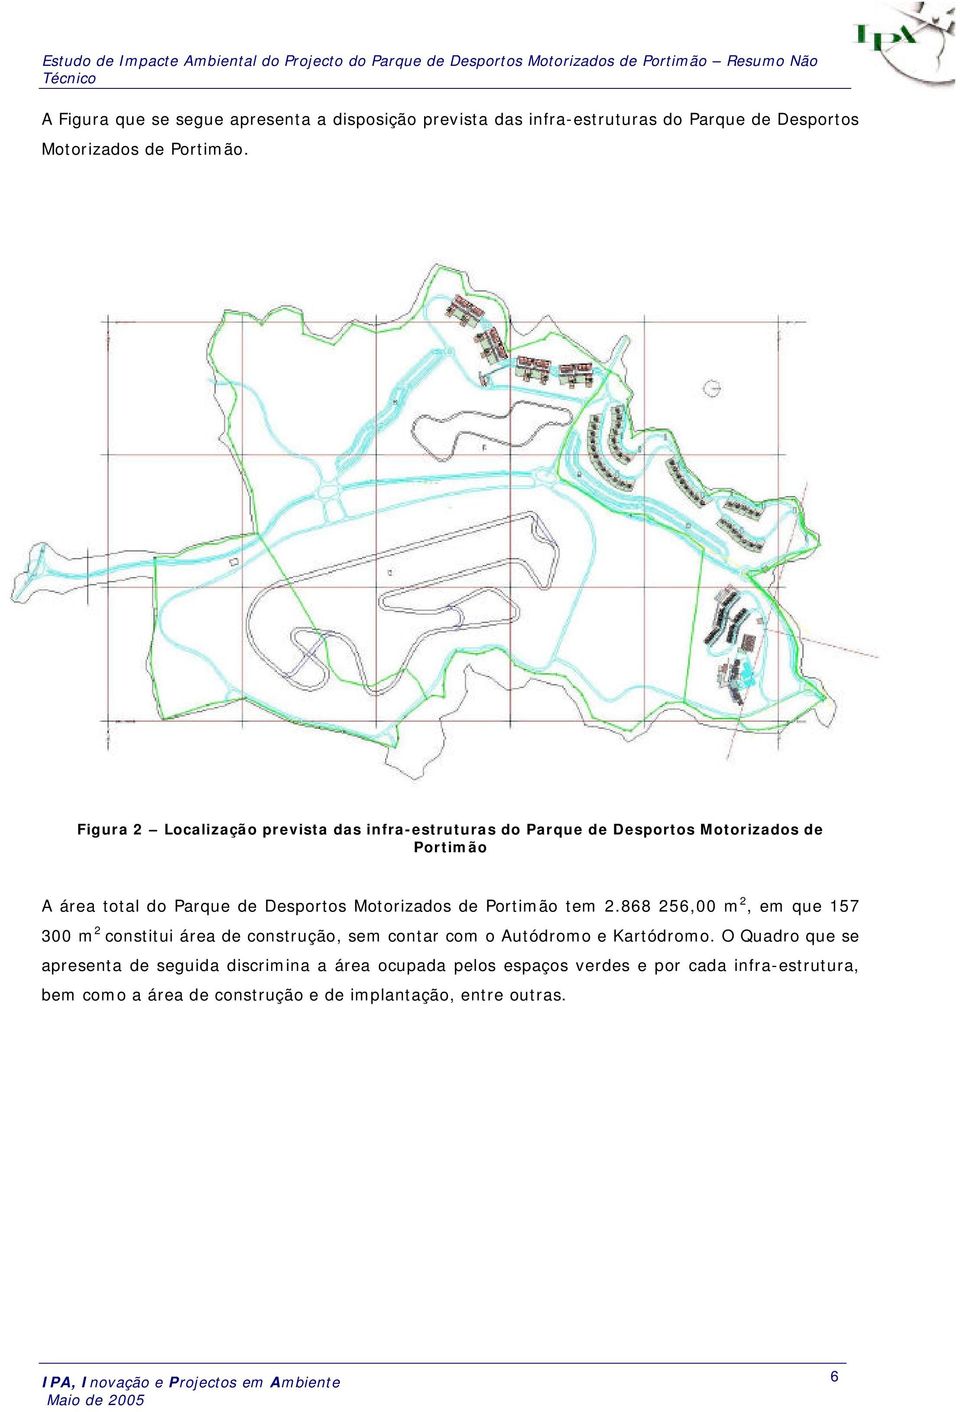 Motorizados de Portimão tem 2.868 256,00 m 2, em que 157 300 m 2 constitui área de construção, sem contar com o Autódromo e Kartódromo.